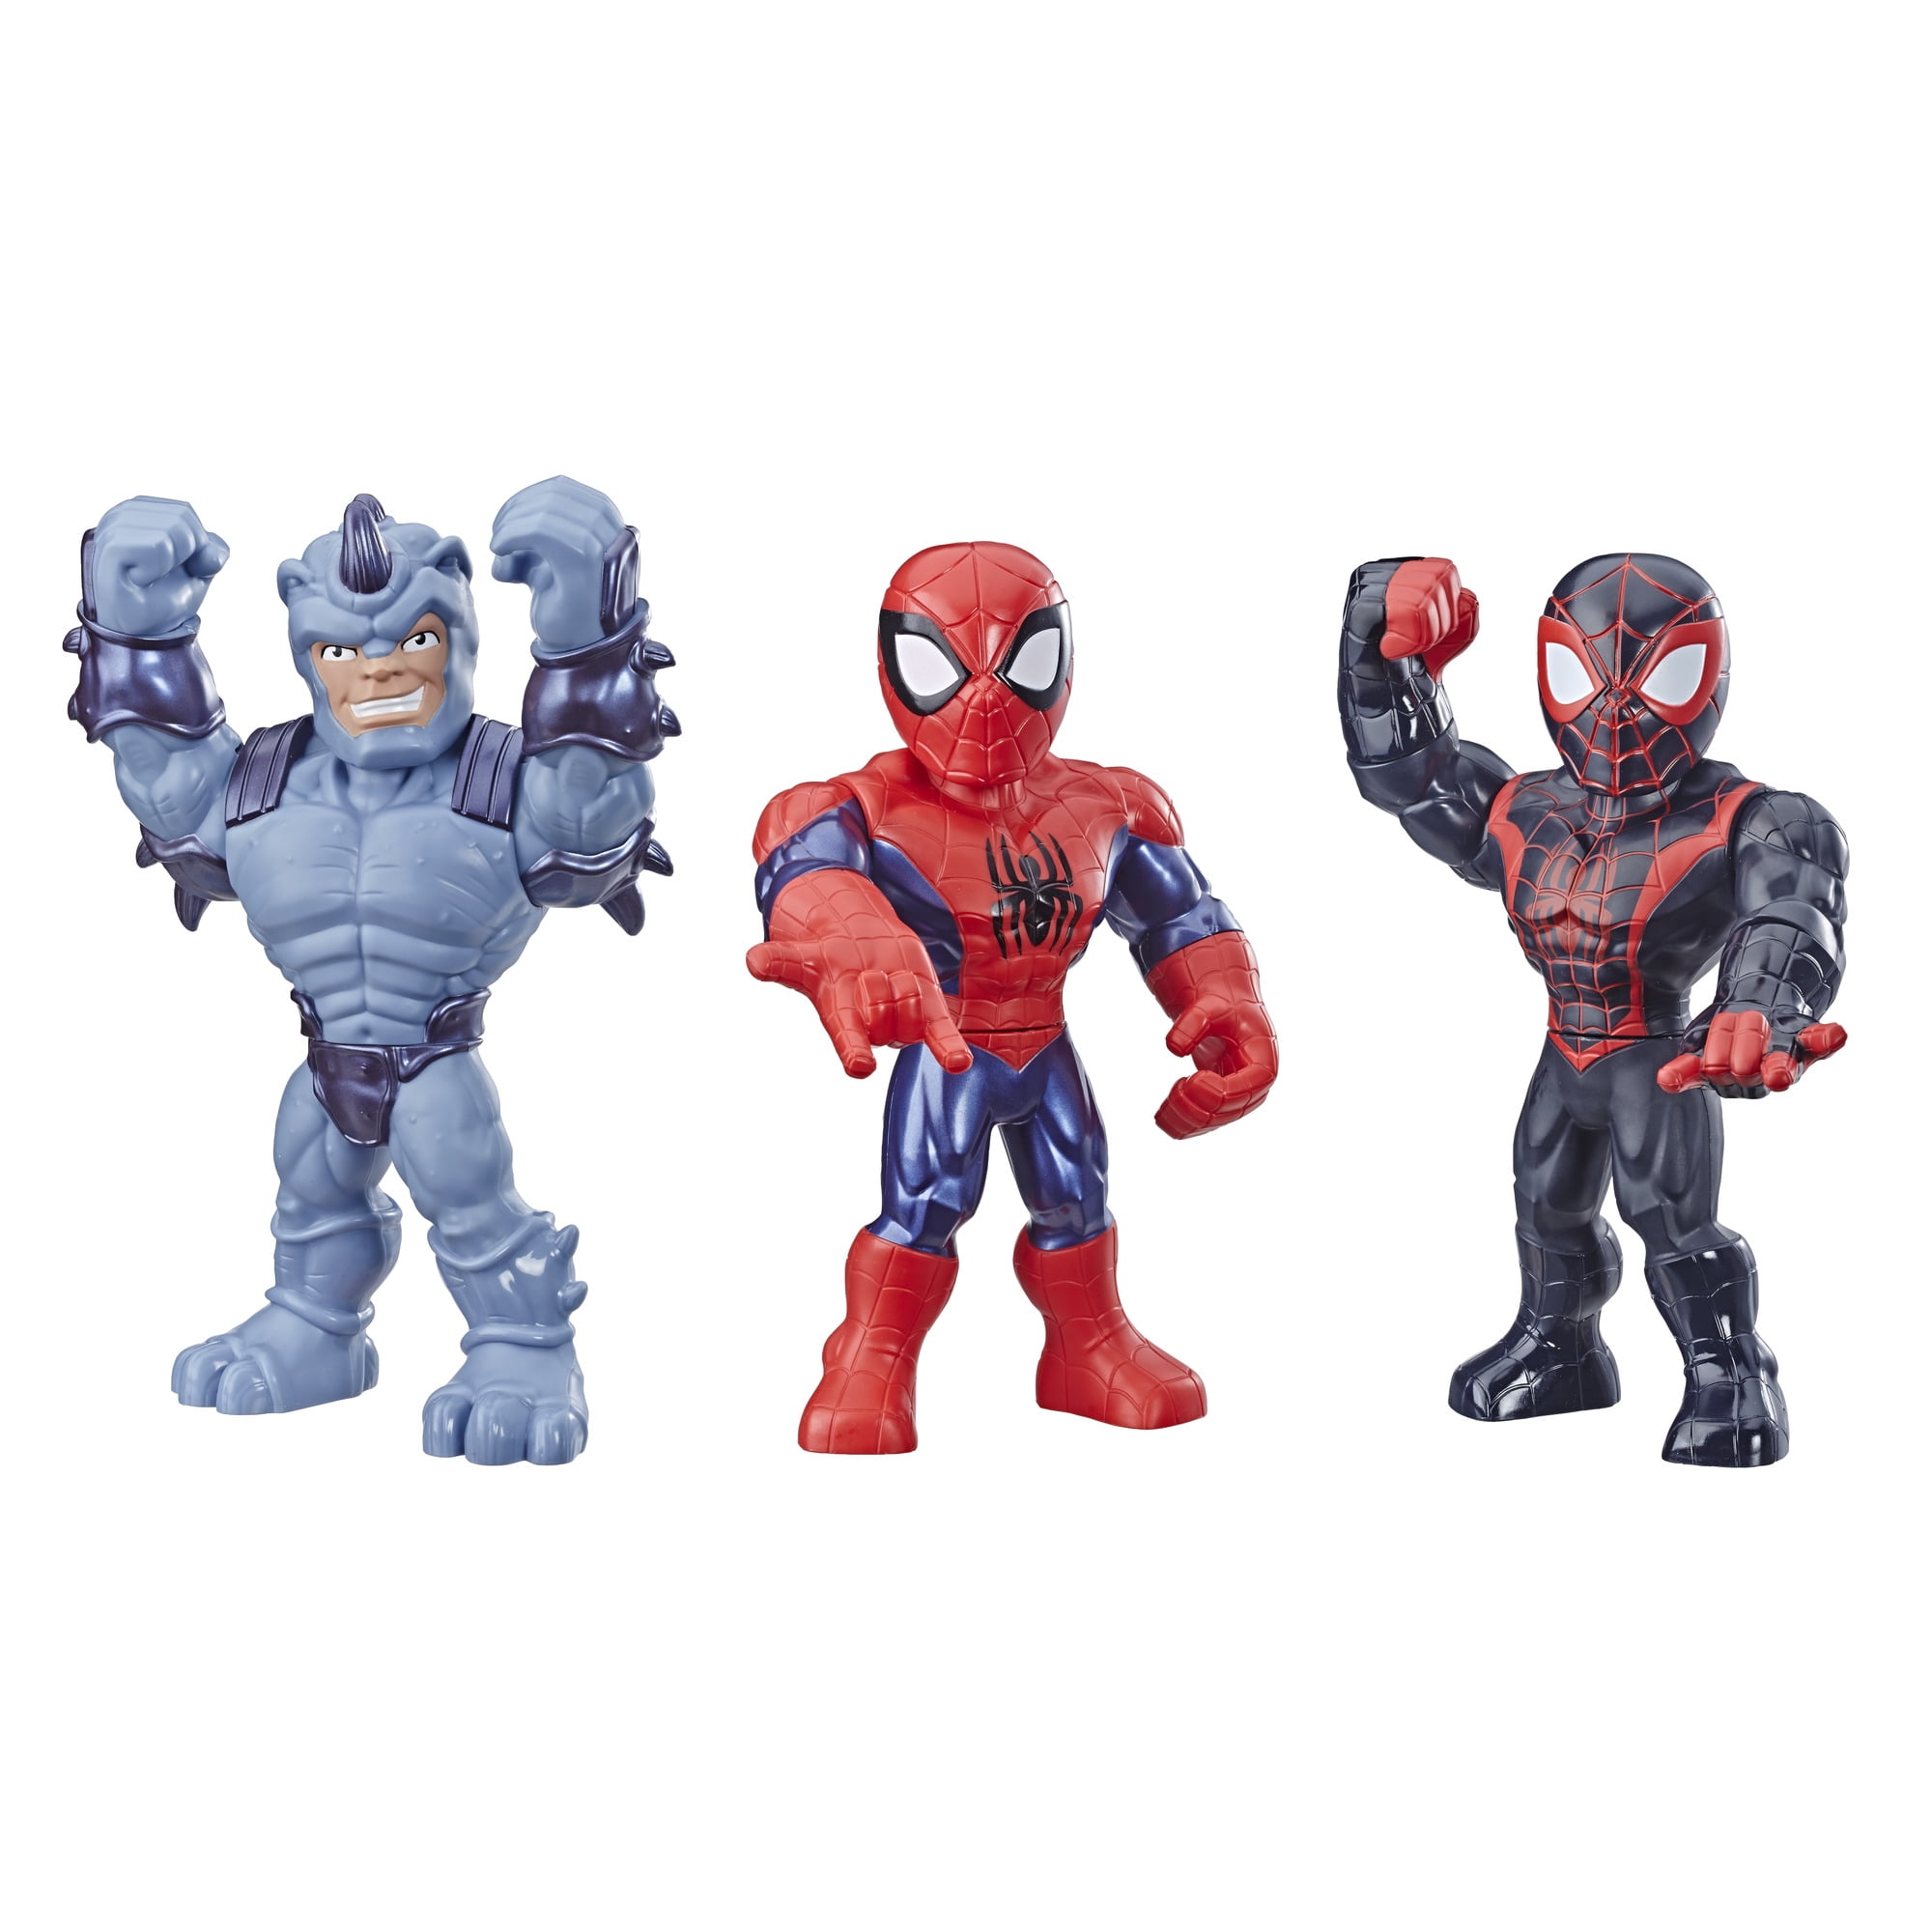 Random 5pcs 2.5'' Playskool Marvel Super Hero Adventures SPIDER-MAN Figure Toy 